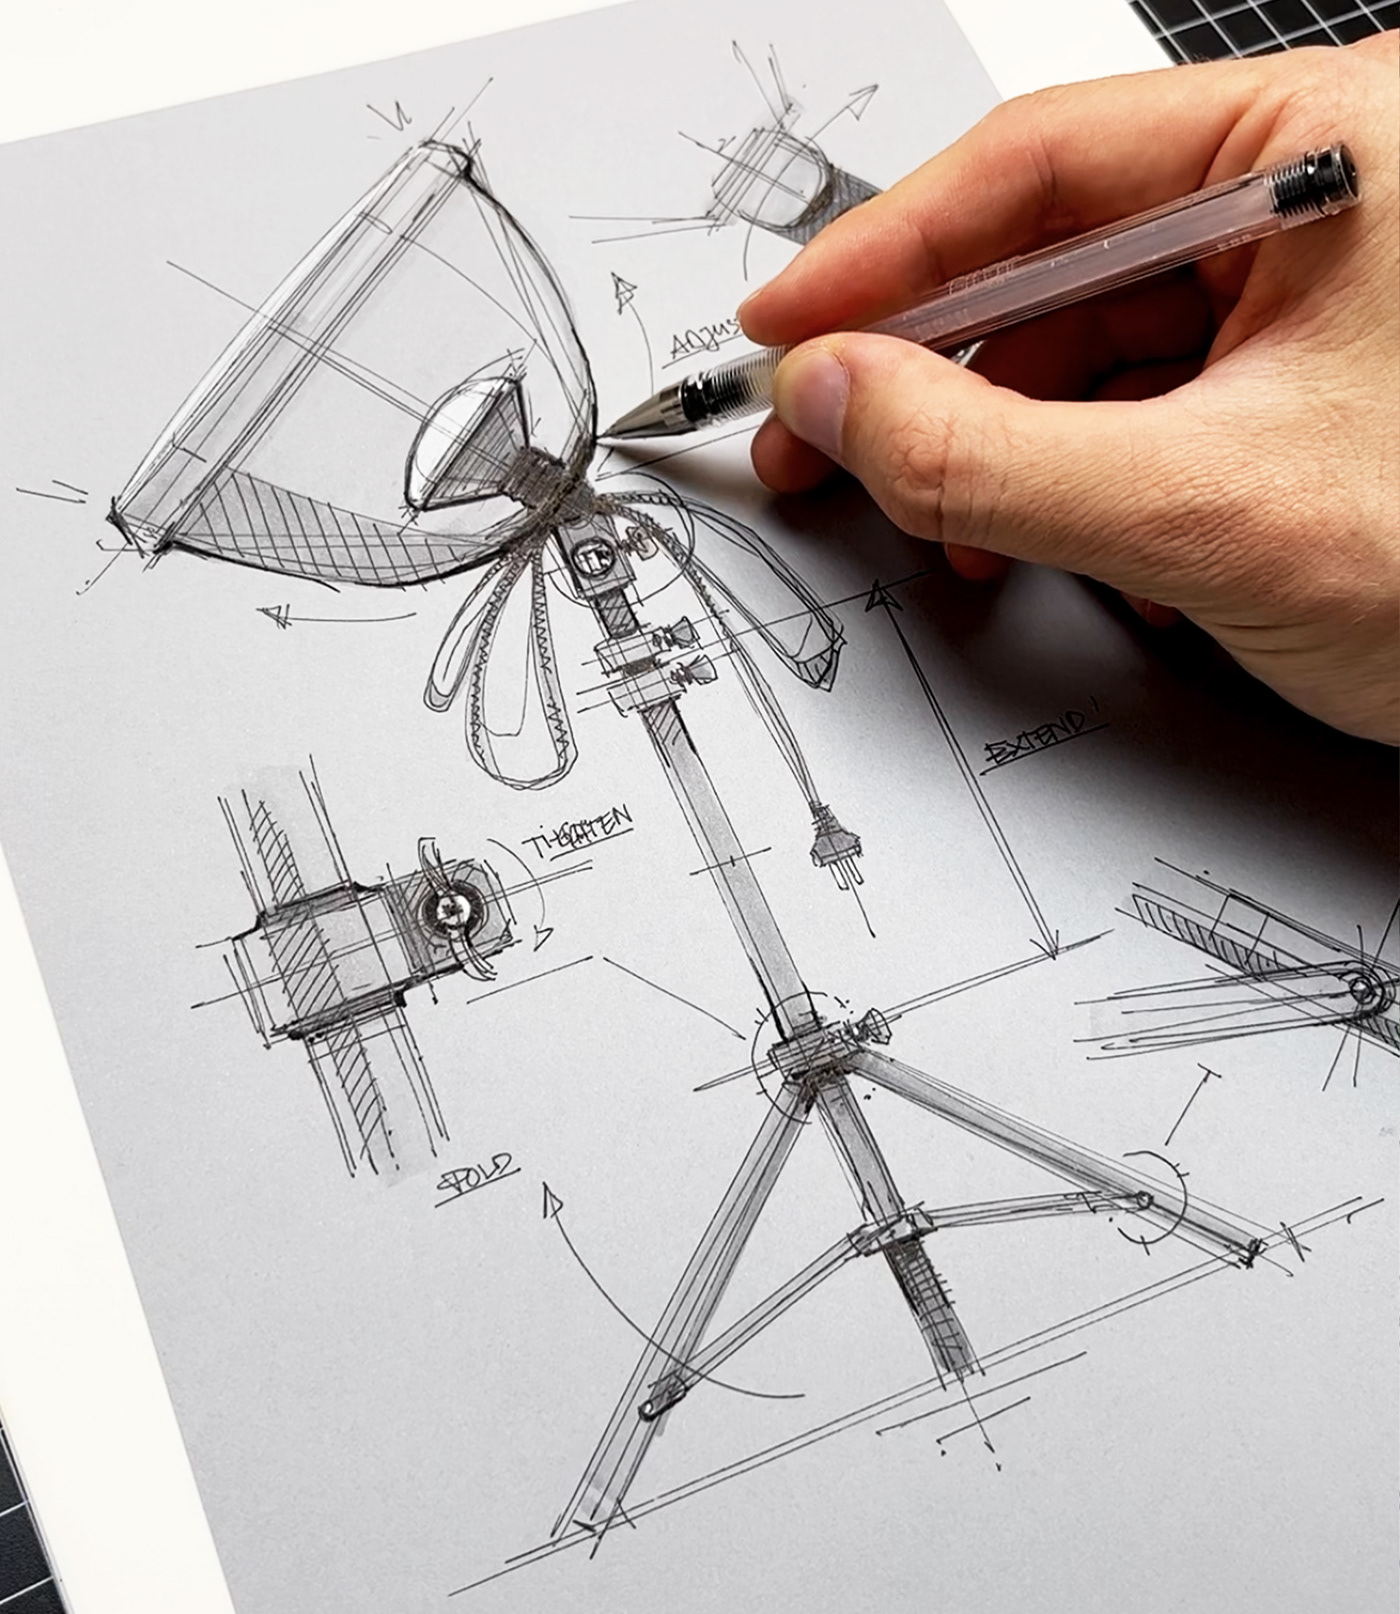 idsketch sketch industrialdesign productdesign scribble sketchbook technical Drawing  ILLUSTRATION  skizze